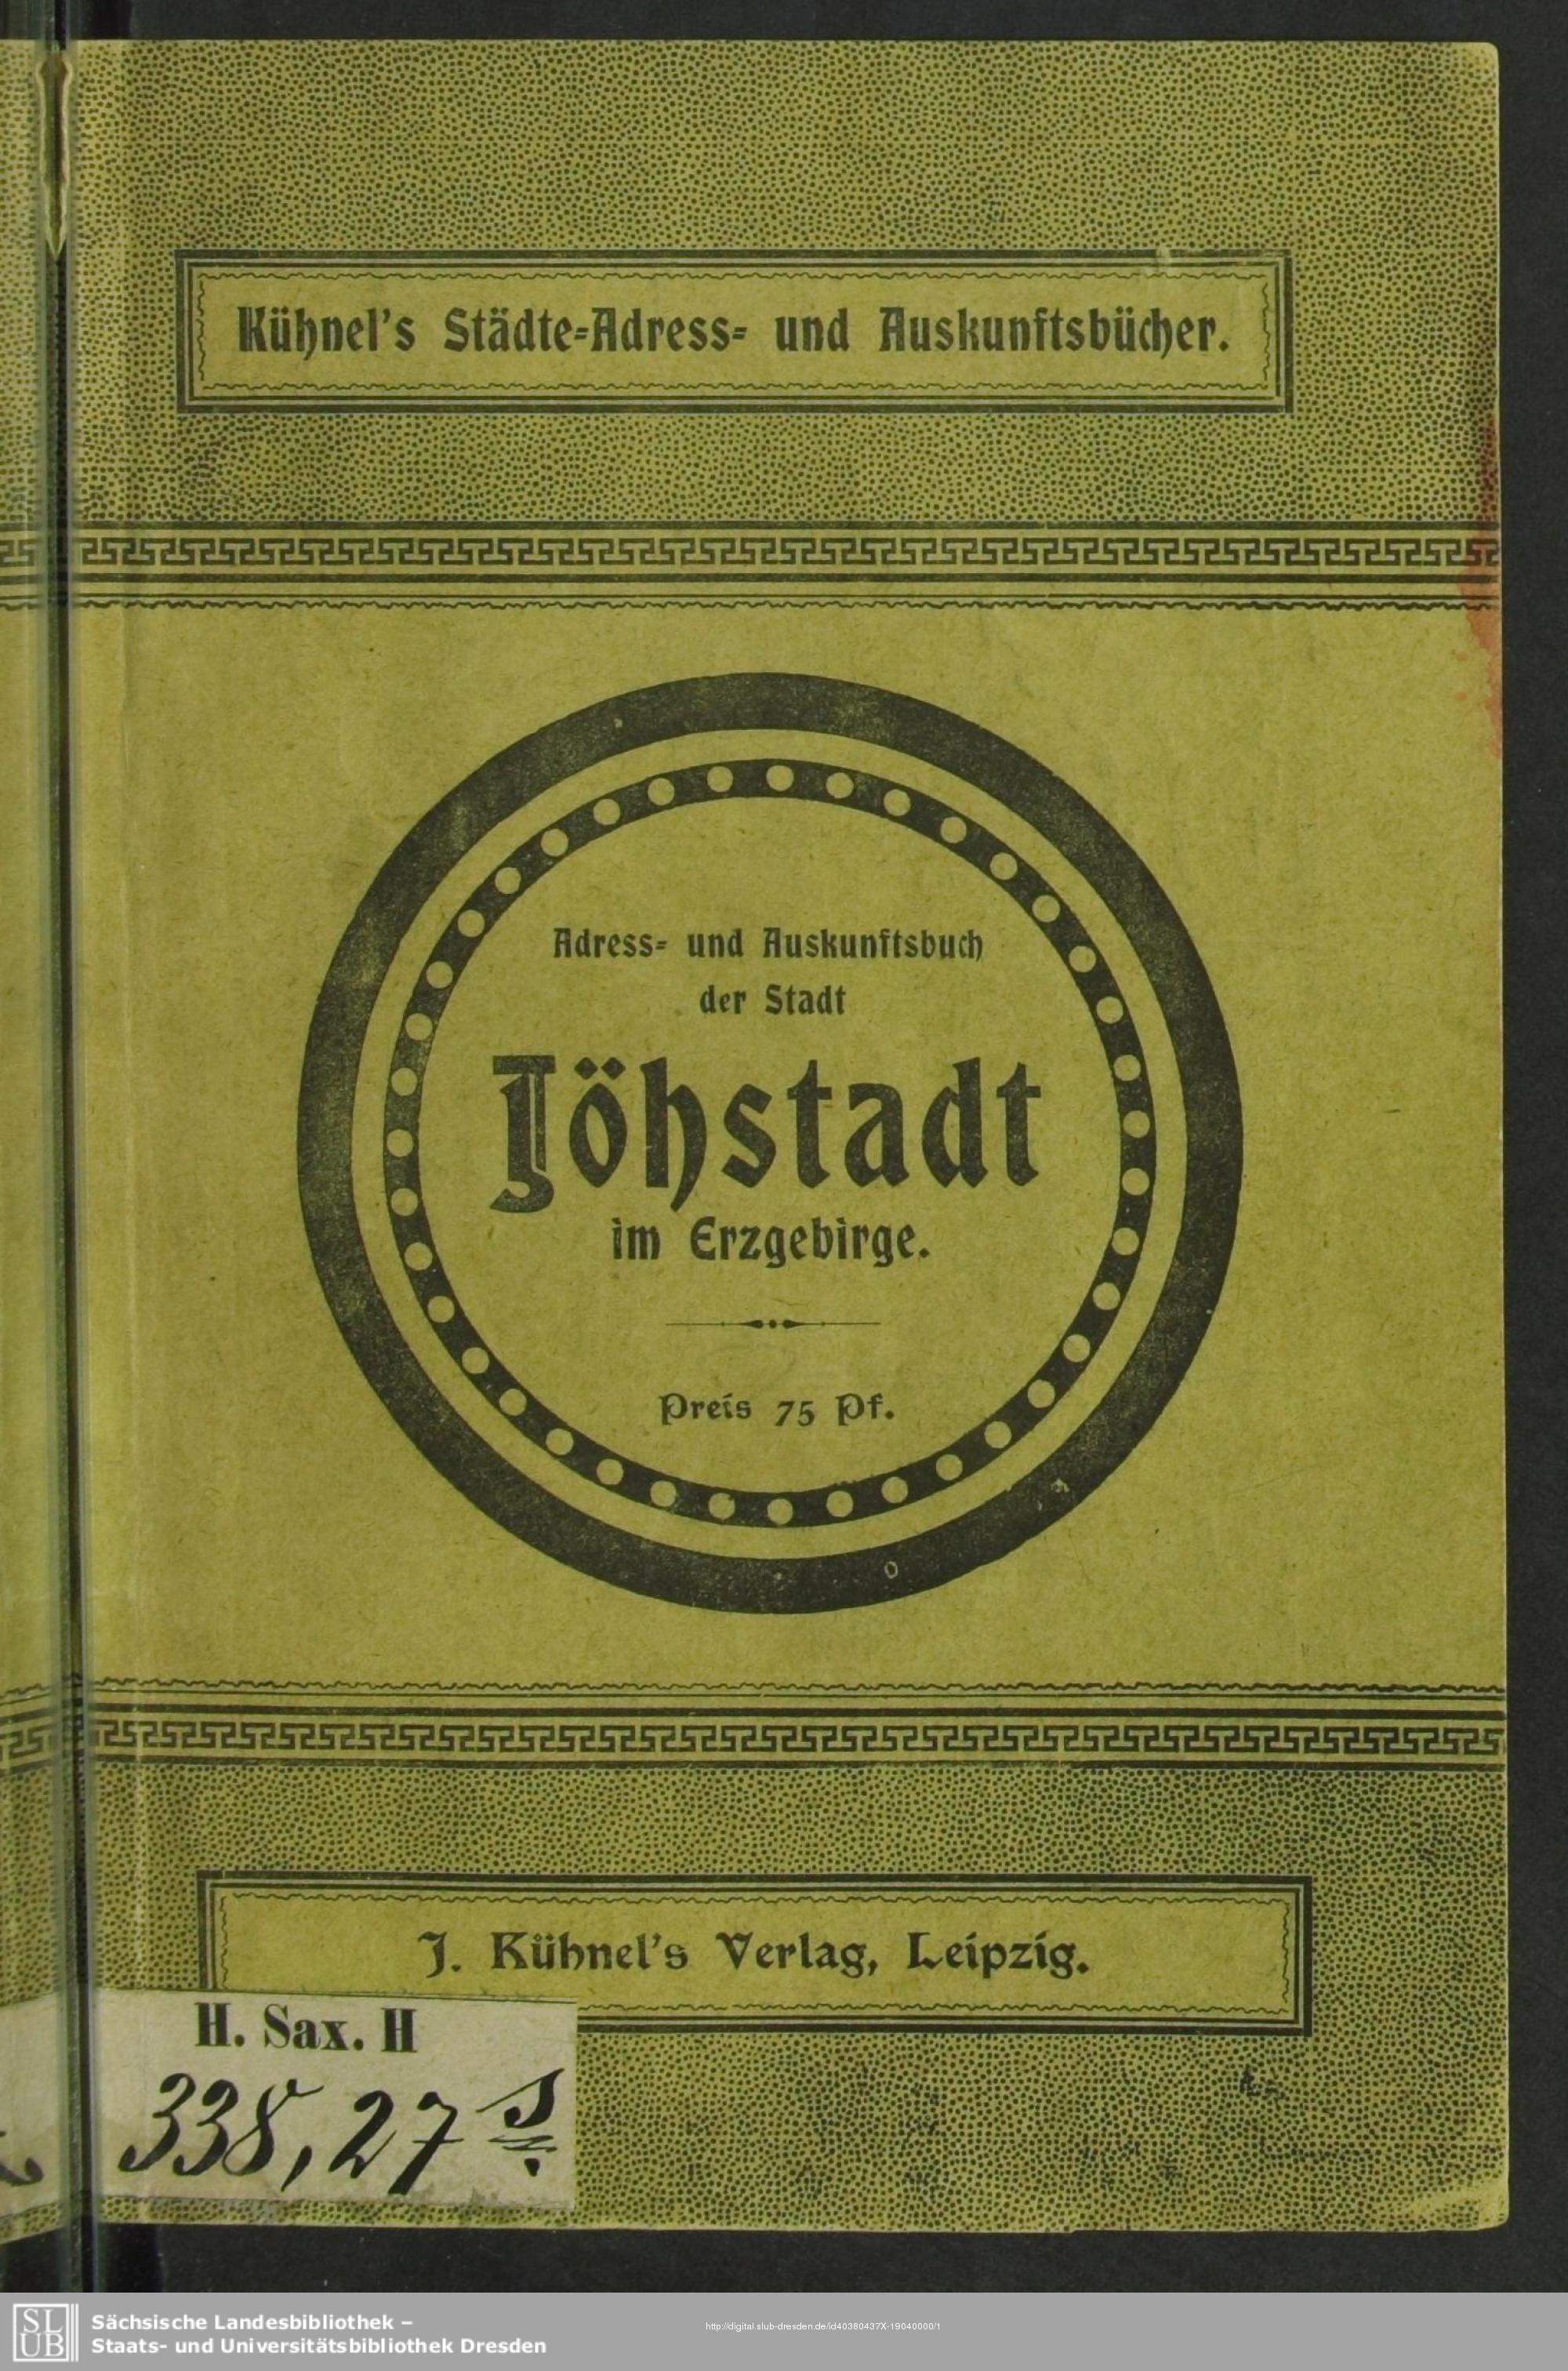 Adress- und Auskunfts-Buch der Stadt Jöhstadt im Erzgebirge 1904